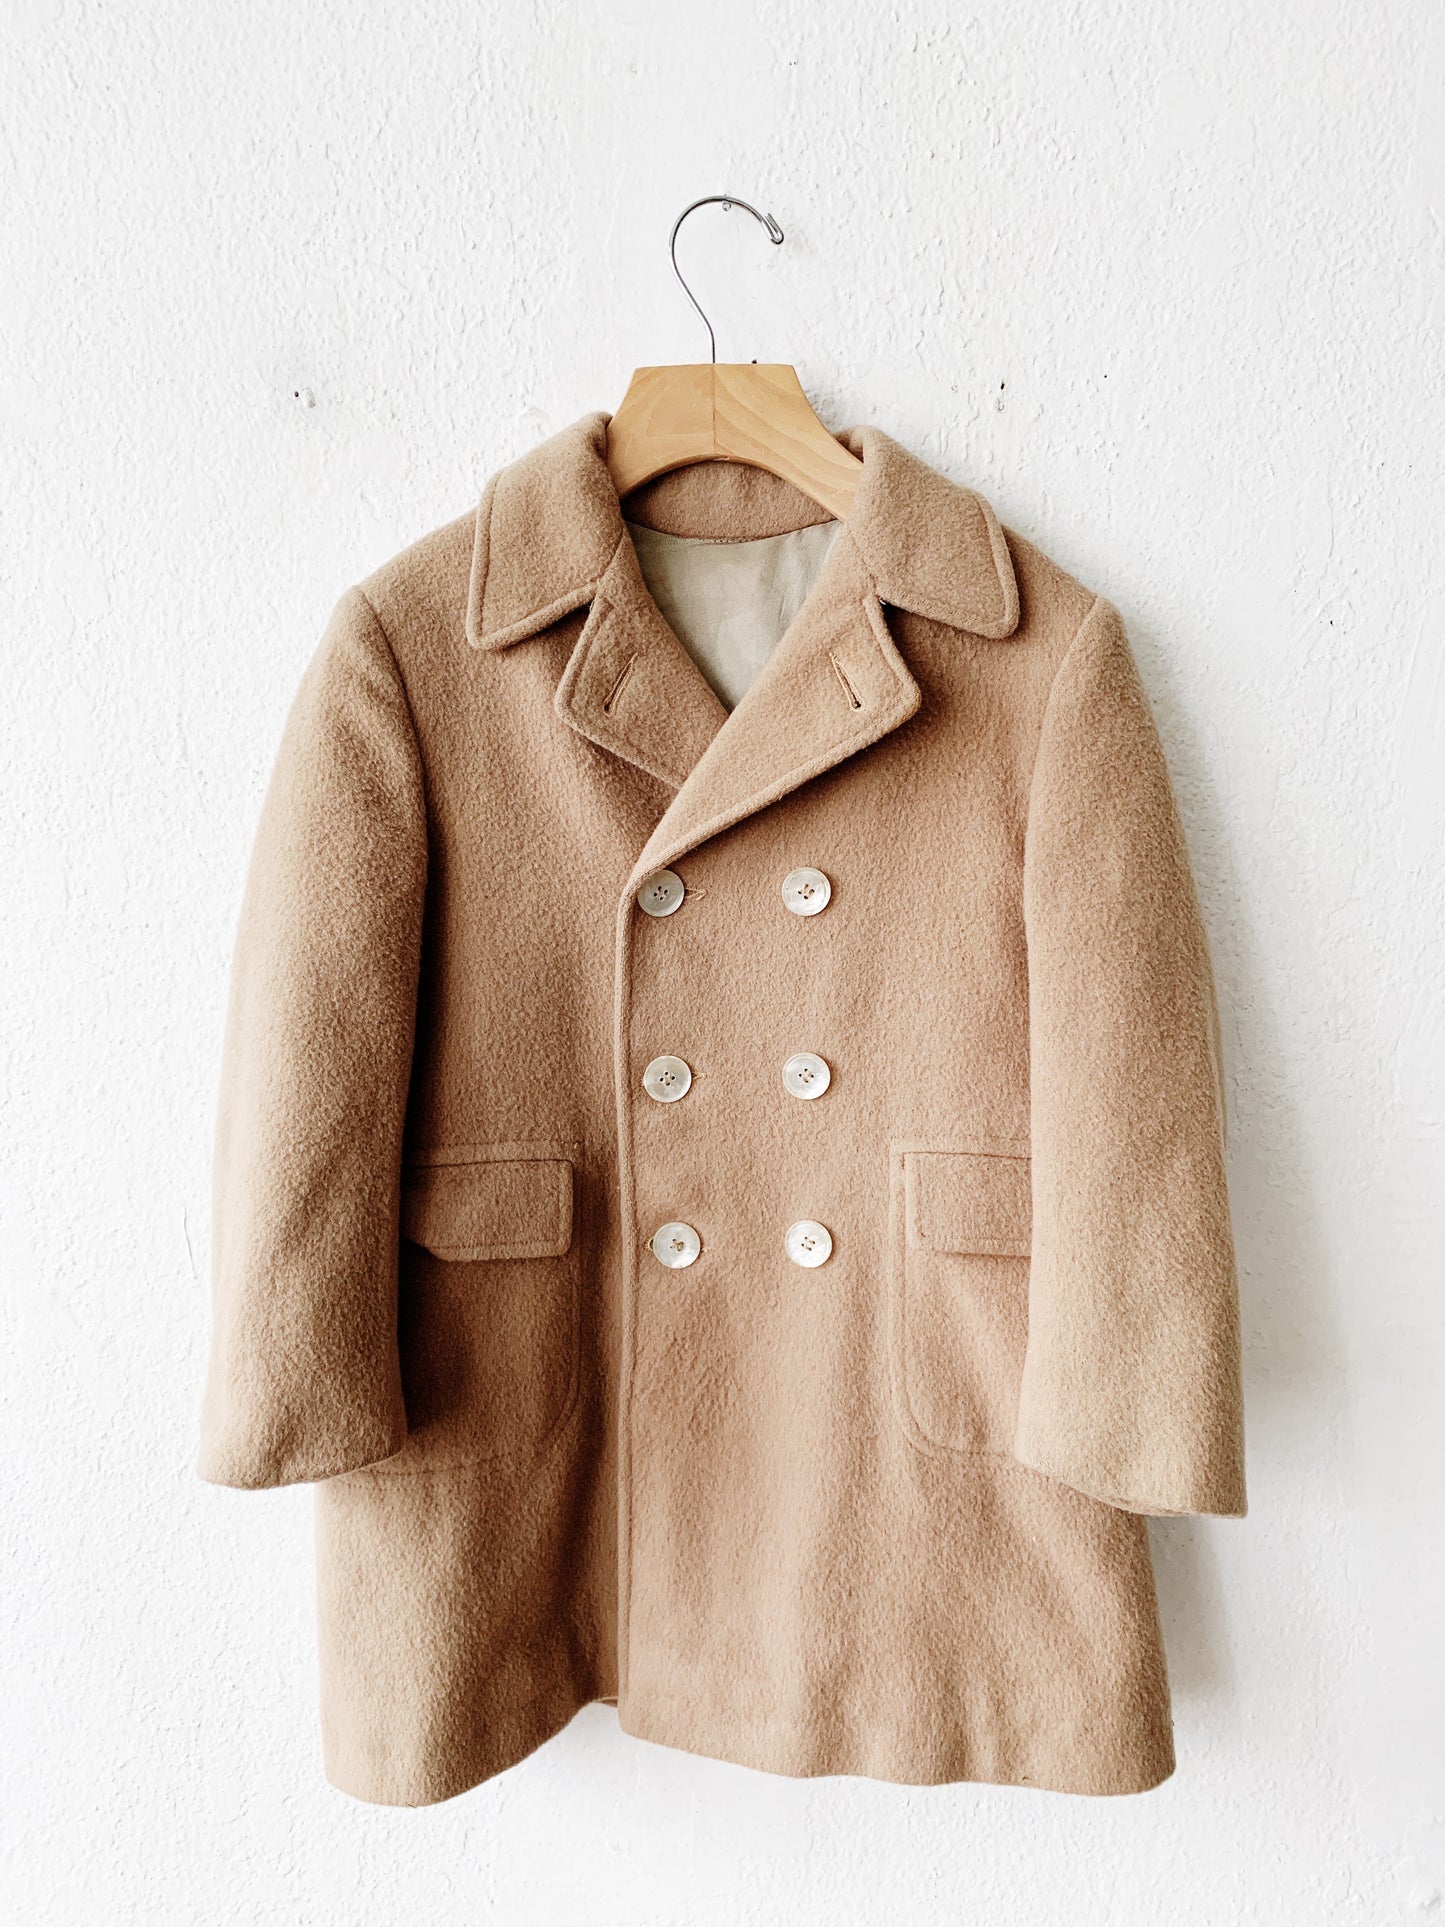 Vintage Child’s Wool Pea Coat